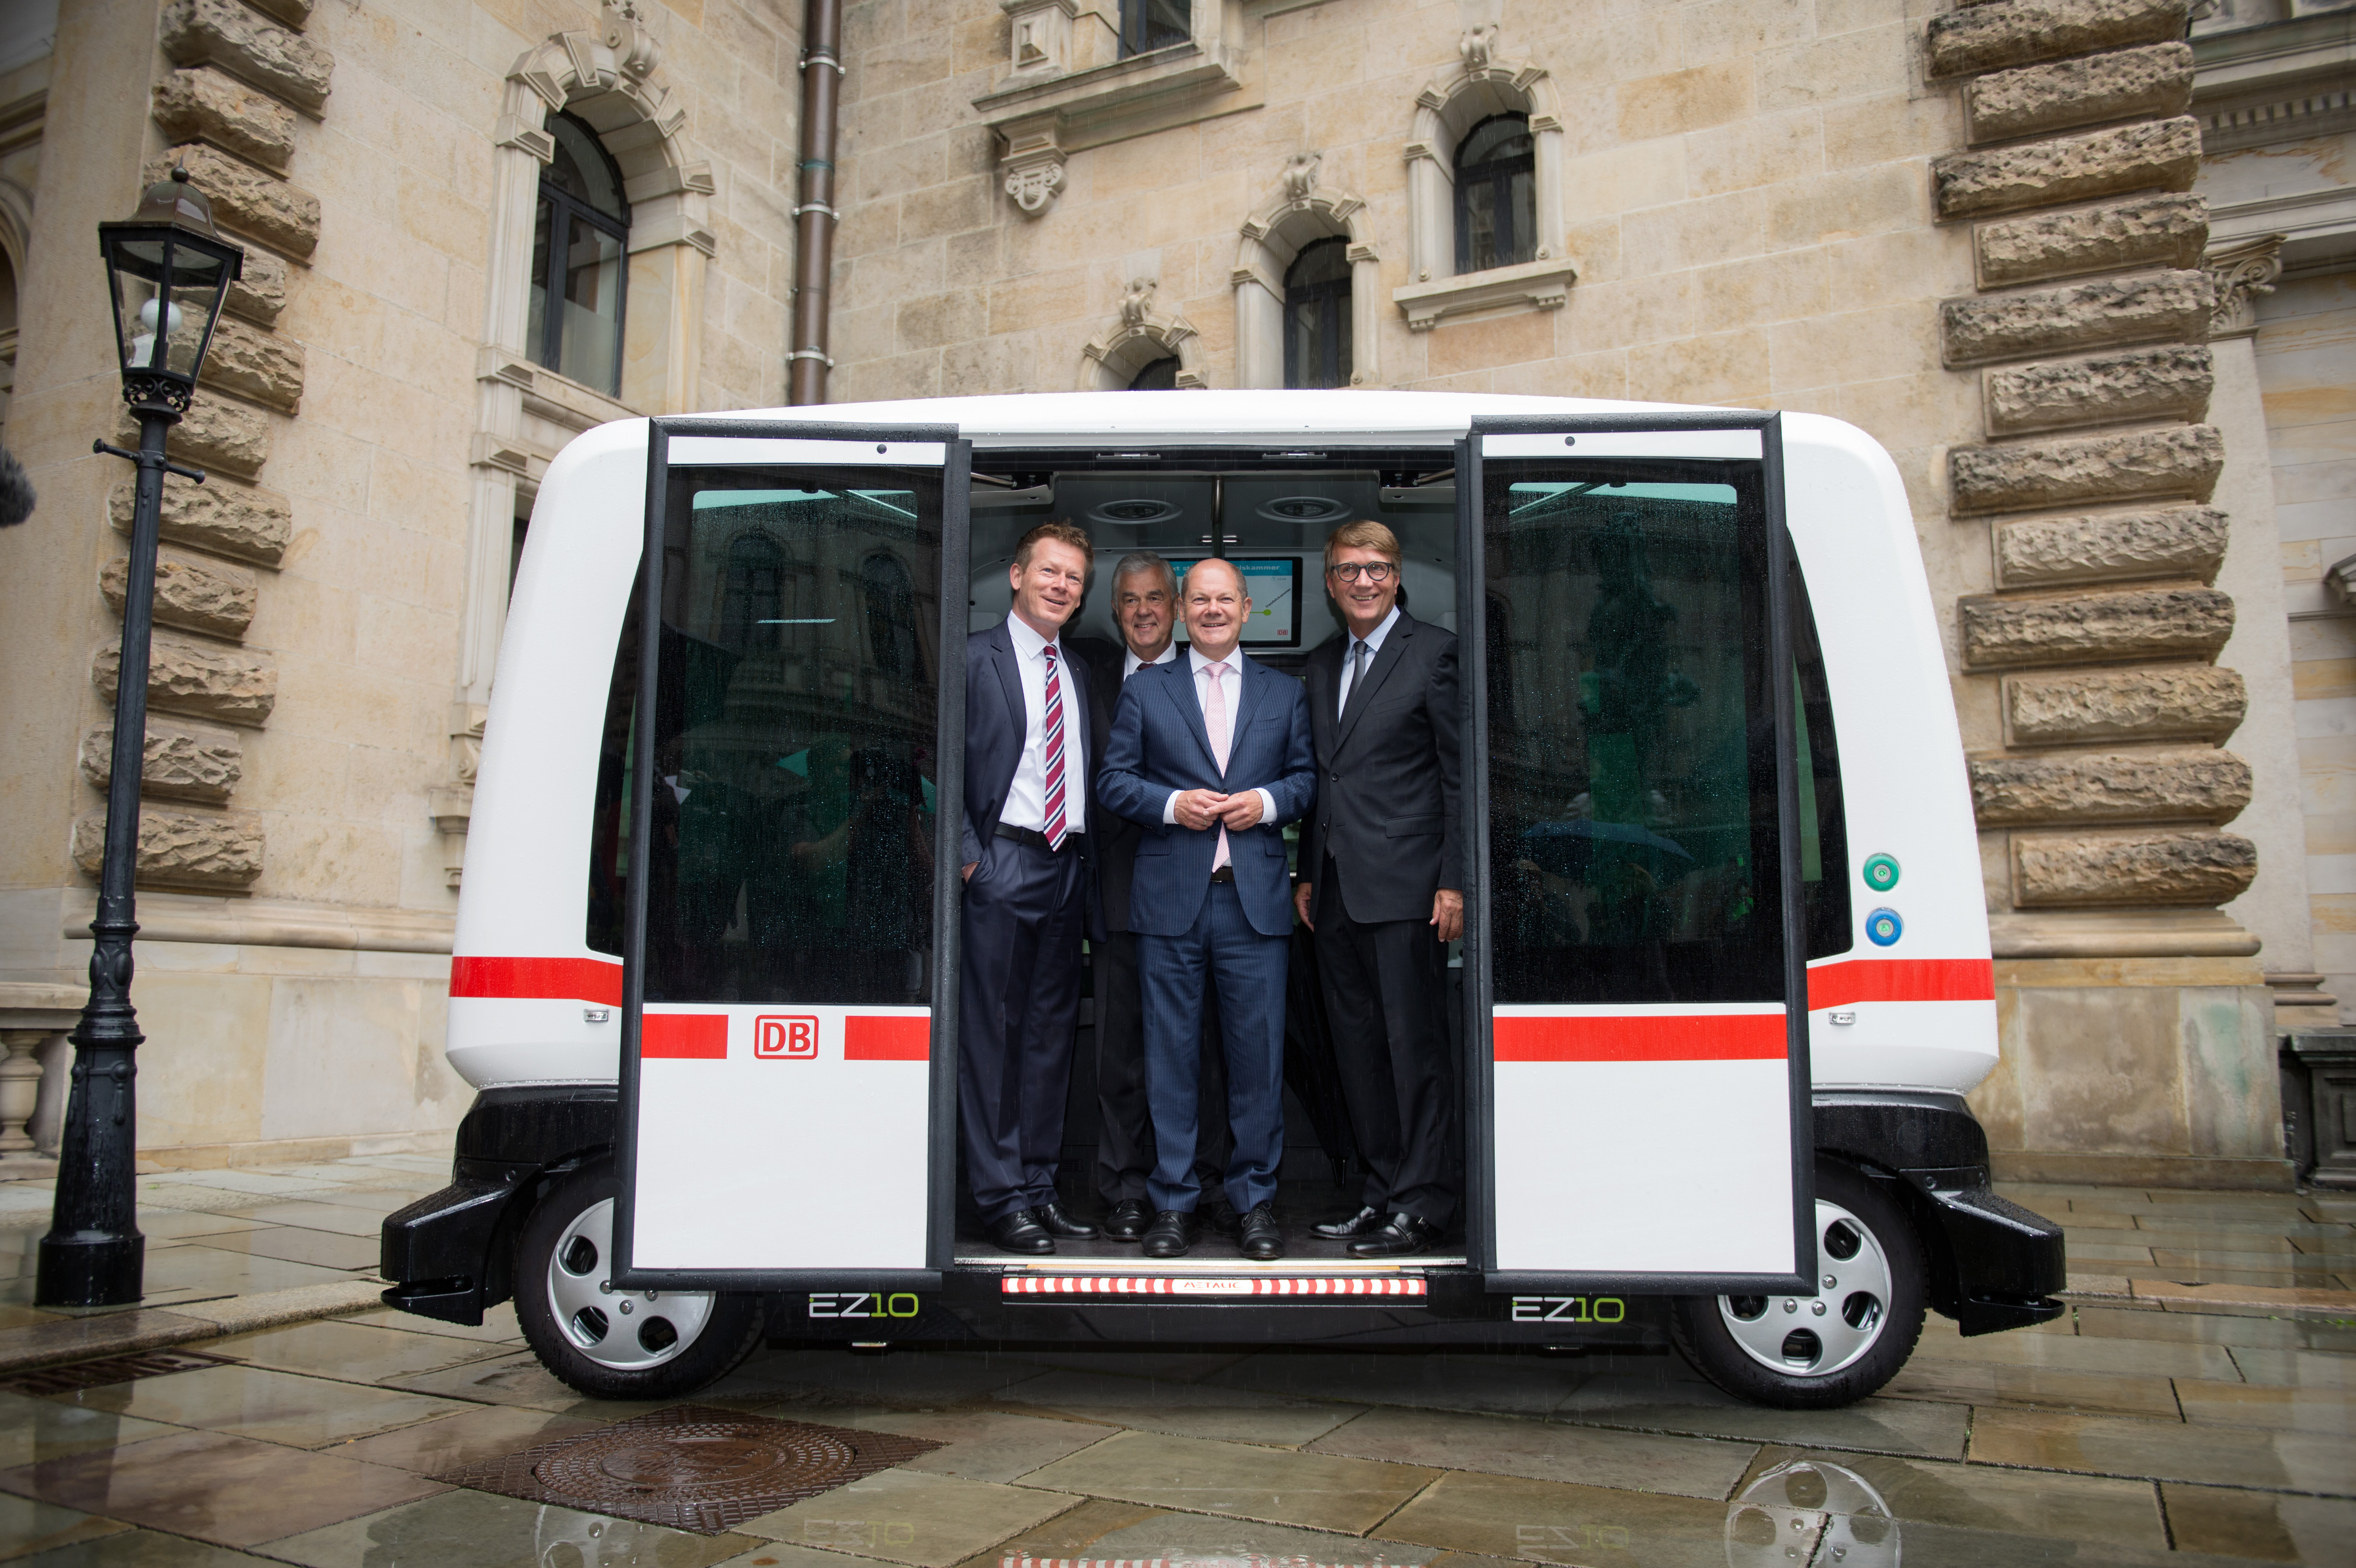 Die Stadt Hamburg hat eine Partnerschaft mit der Deutschen Bahn zum Thema "Smart City" vereinbart.